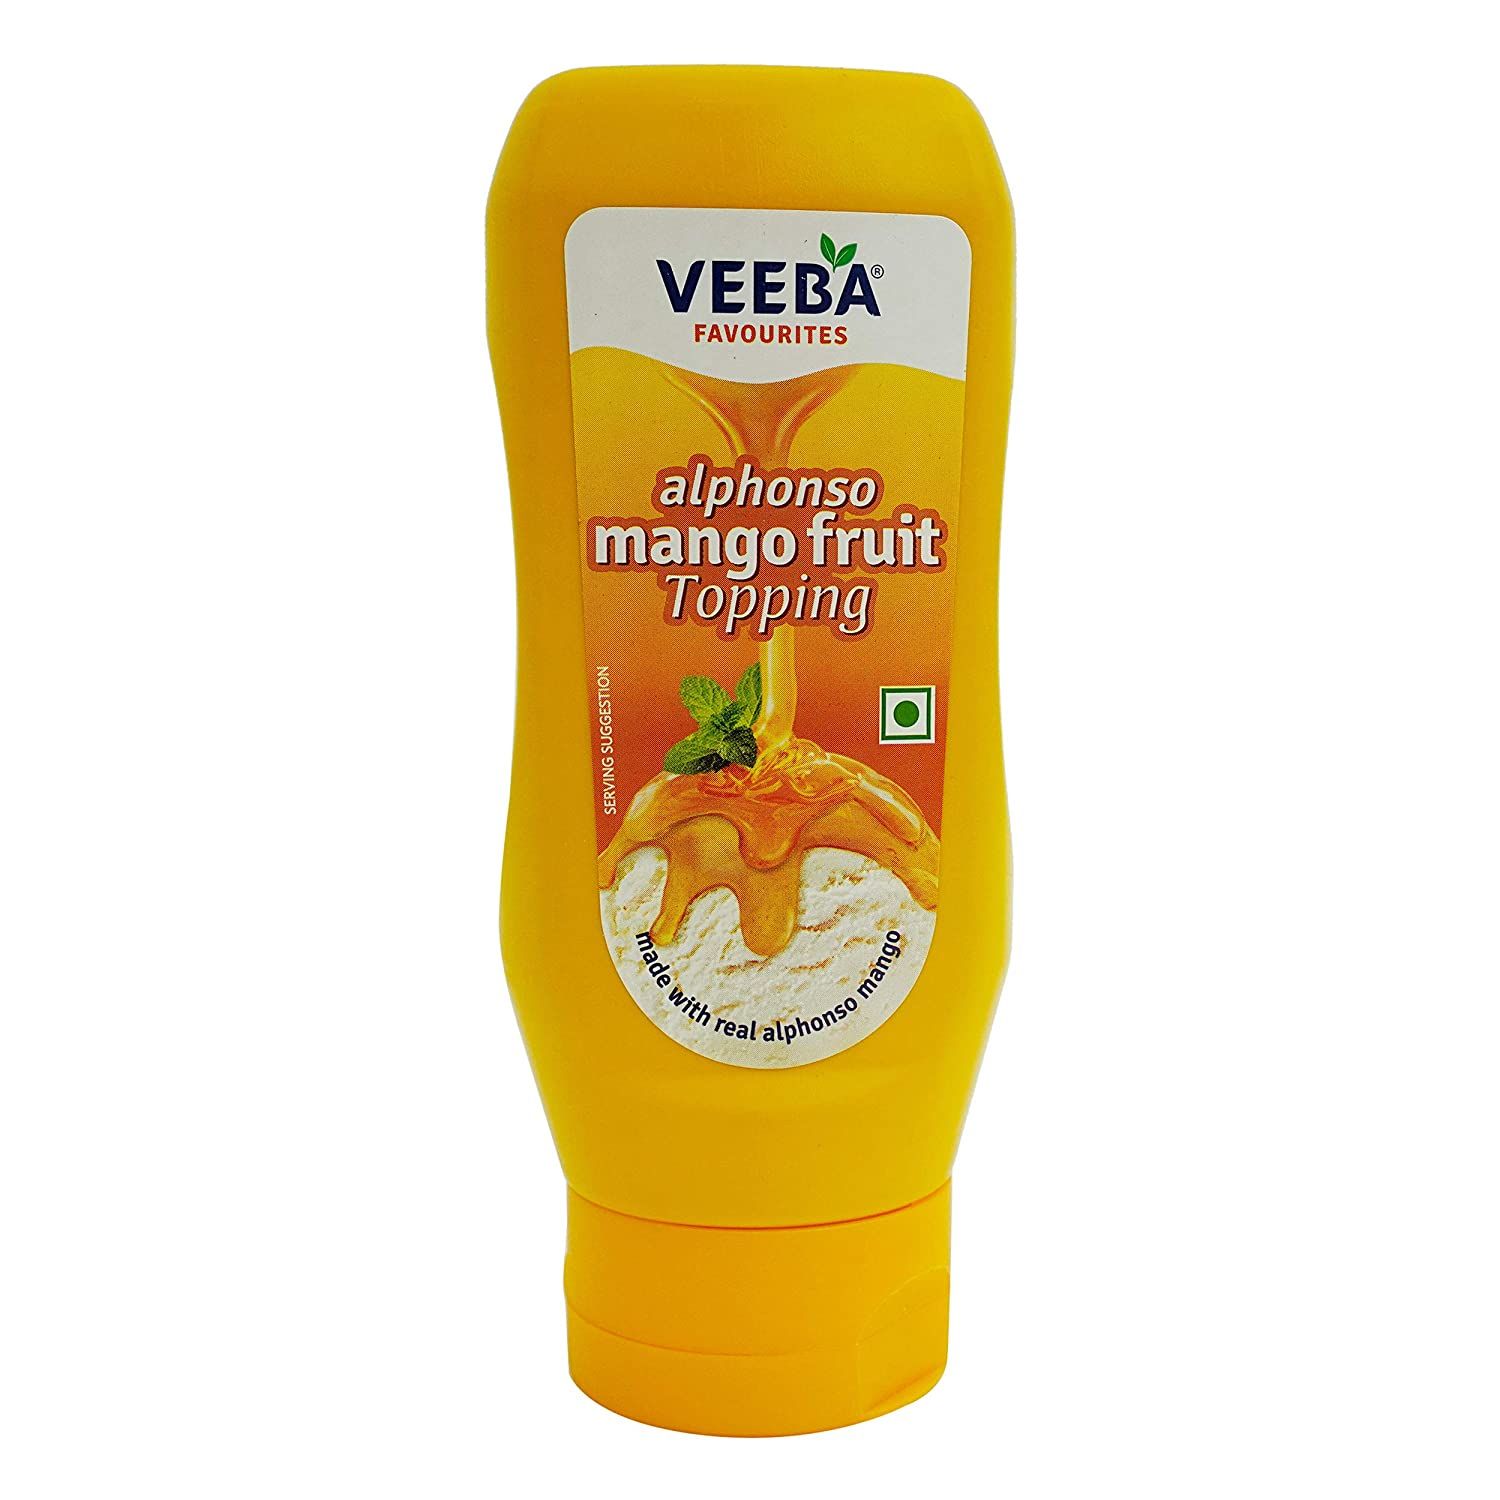 Veeba Alphonso Mango Fruit Topping Image